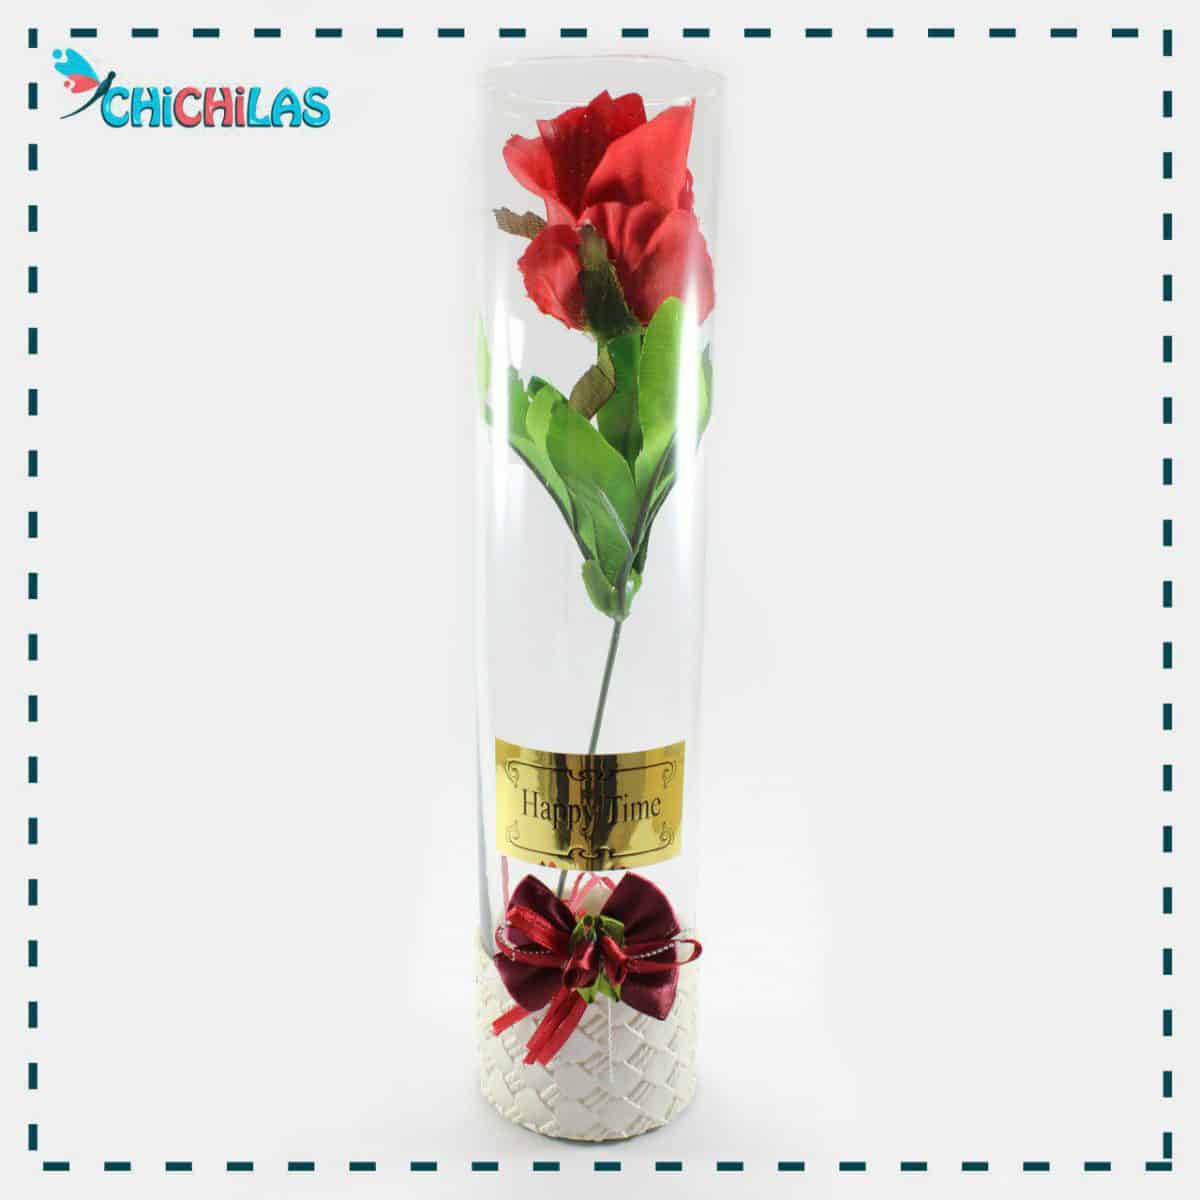 چیچیلاس - گلدان شیشه ای - گلدان دکوری - چیچیلاس - فروشگاه دکوری - گلدان رومیزی - کادویی - هدیه - ولنتاین